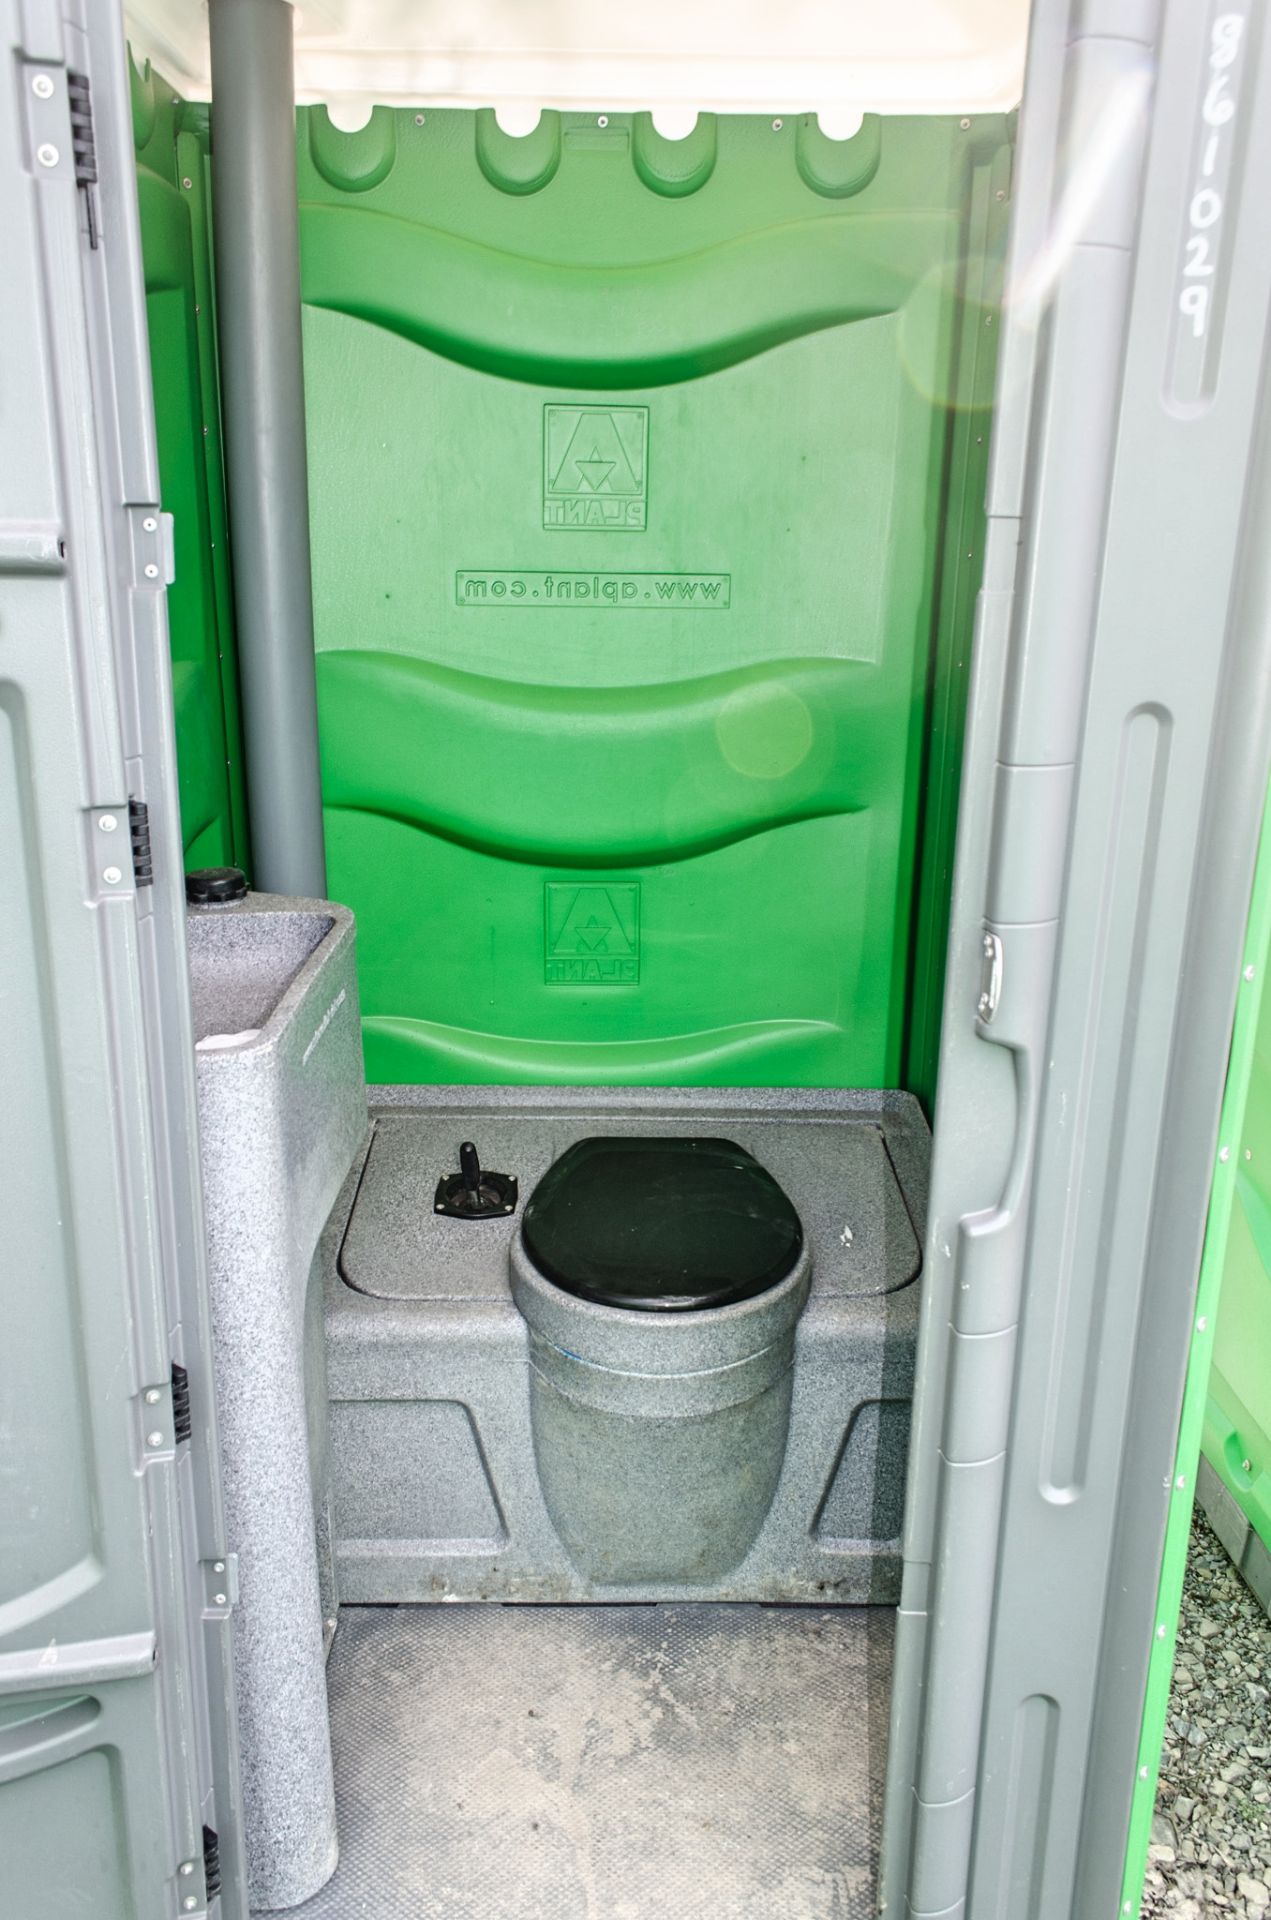 Plastic portable toilet unit A861029 - Image 3 of 3